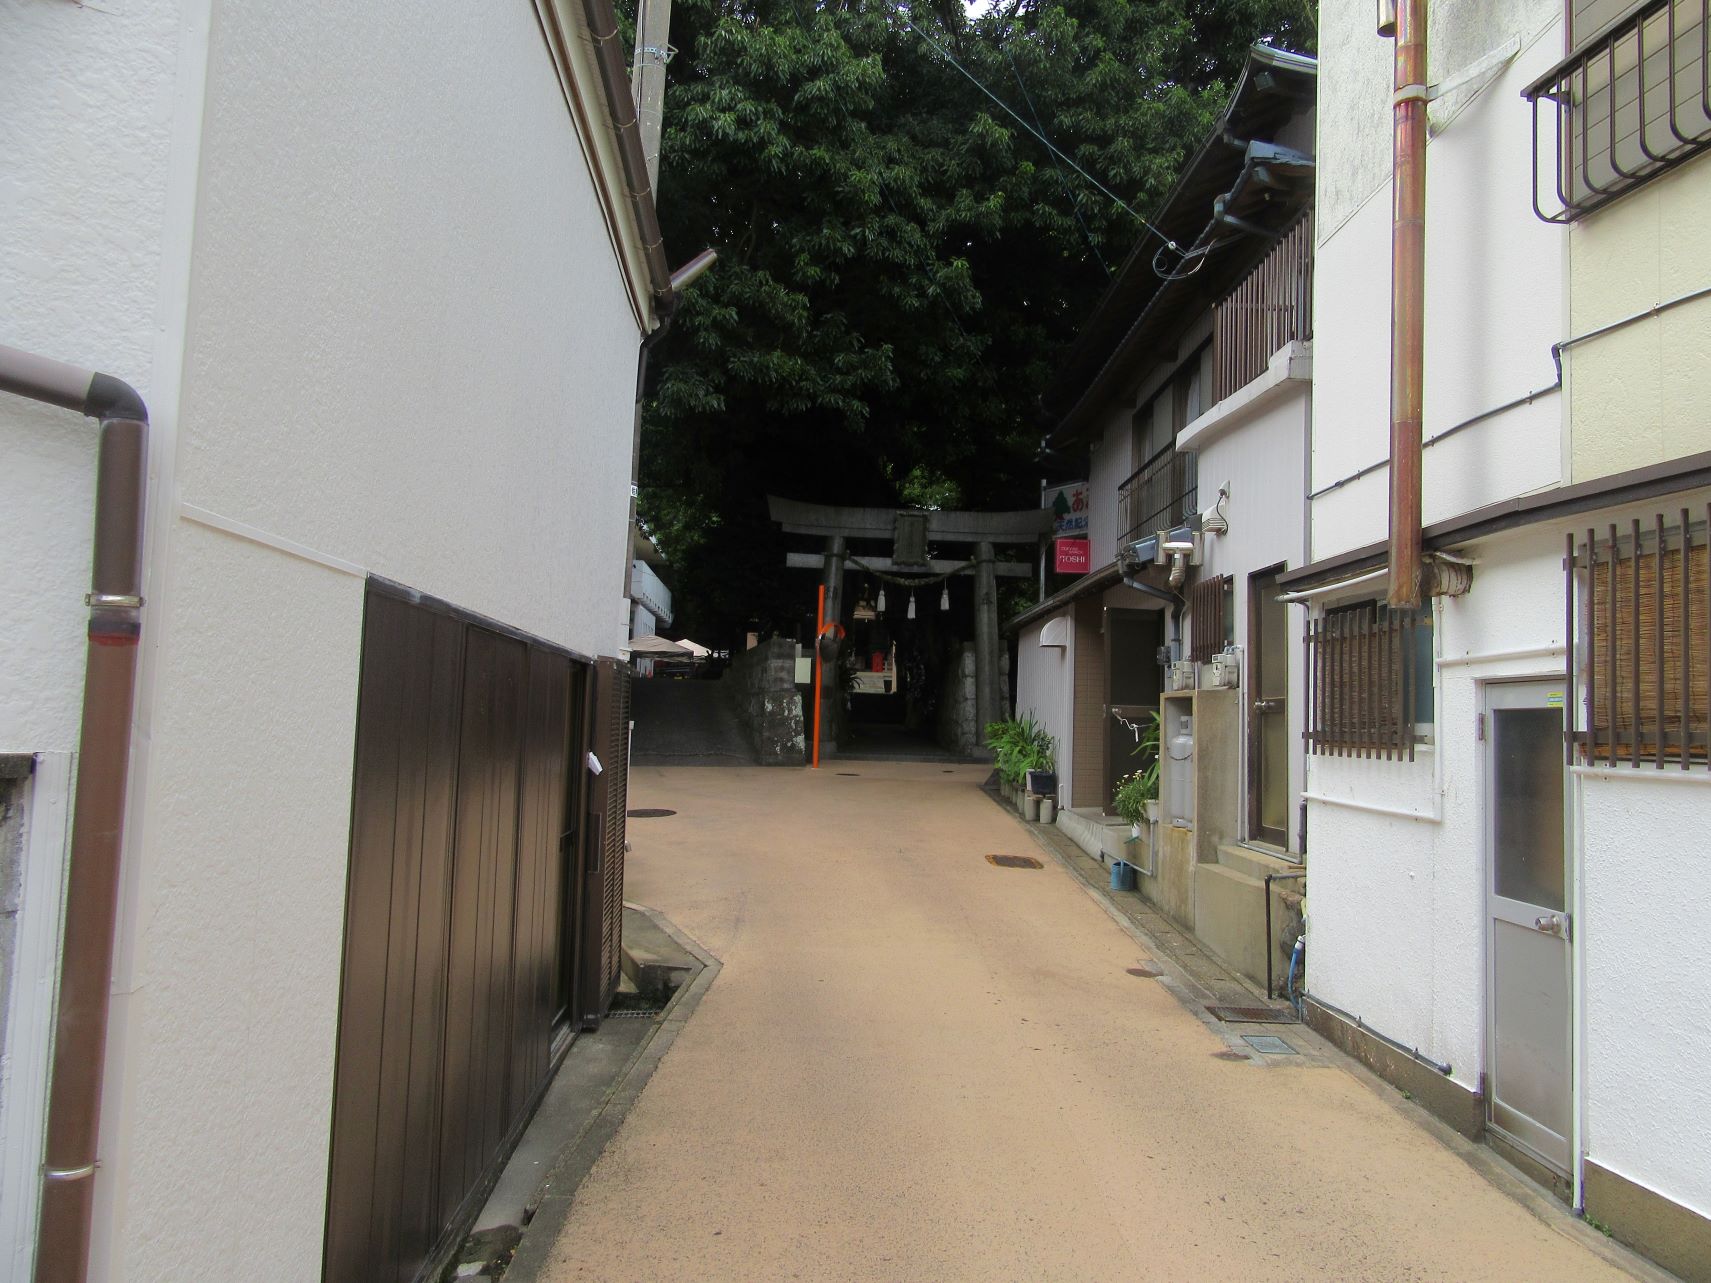 長崎県南松浦郡新上五島町の奈良尾神社へと向かう道。